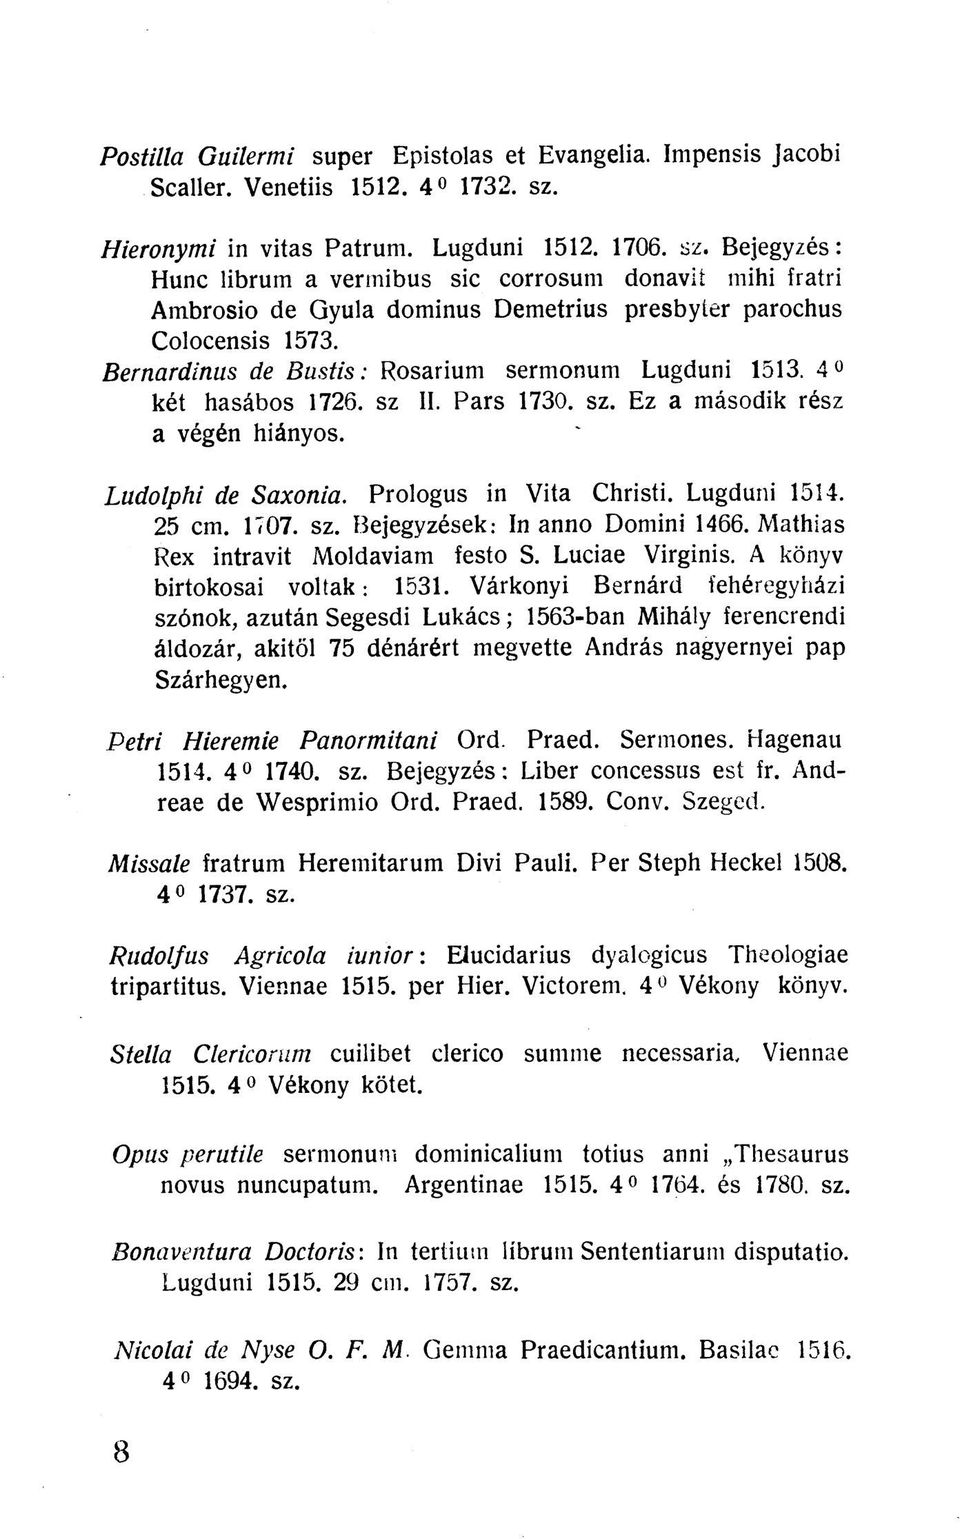 Bernardinus de Bustis: Rosarium sermonum Lugduni 1513. 4 két hasábos 1726. sz II. Pars 1730. sz. Ez a második rész a végén hiányos. Ludolphi de Saxonia. Prologus in Vita Christi. Lugduni 1514. 25 cm.